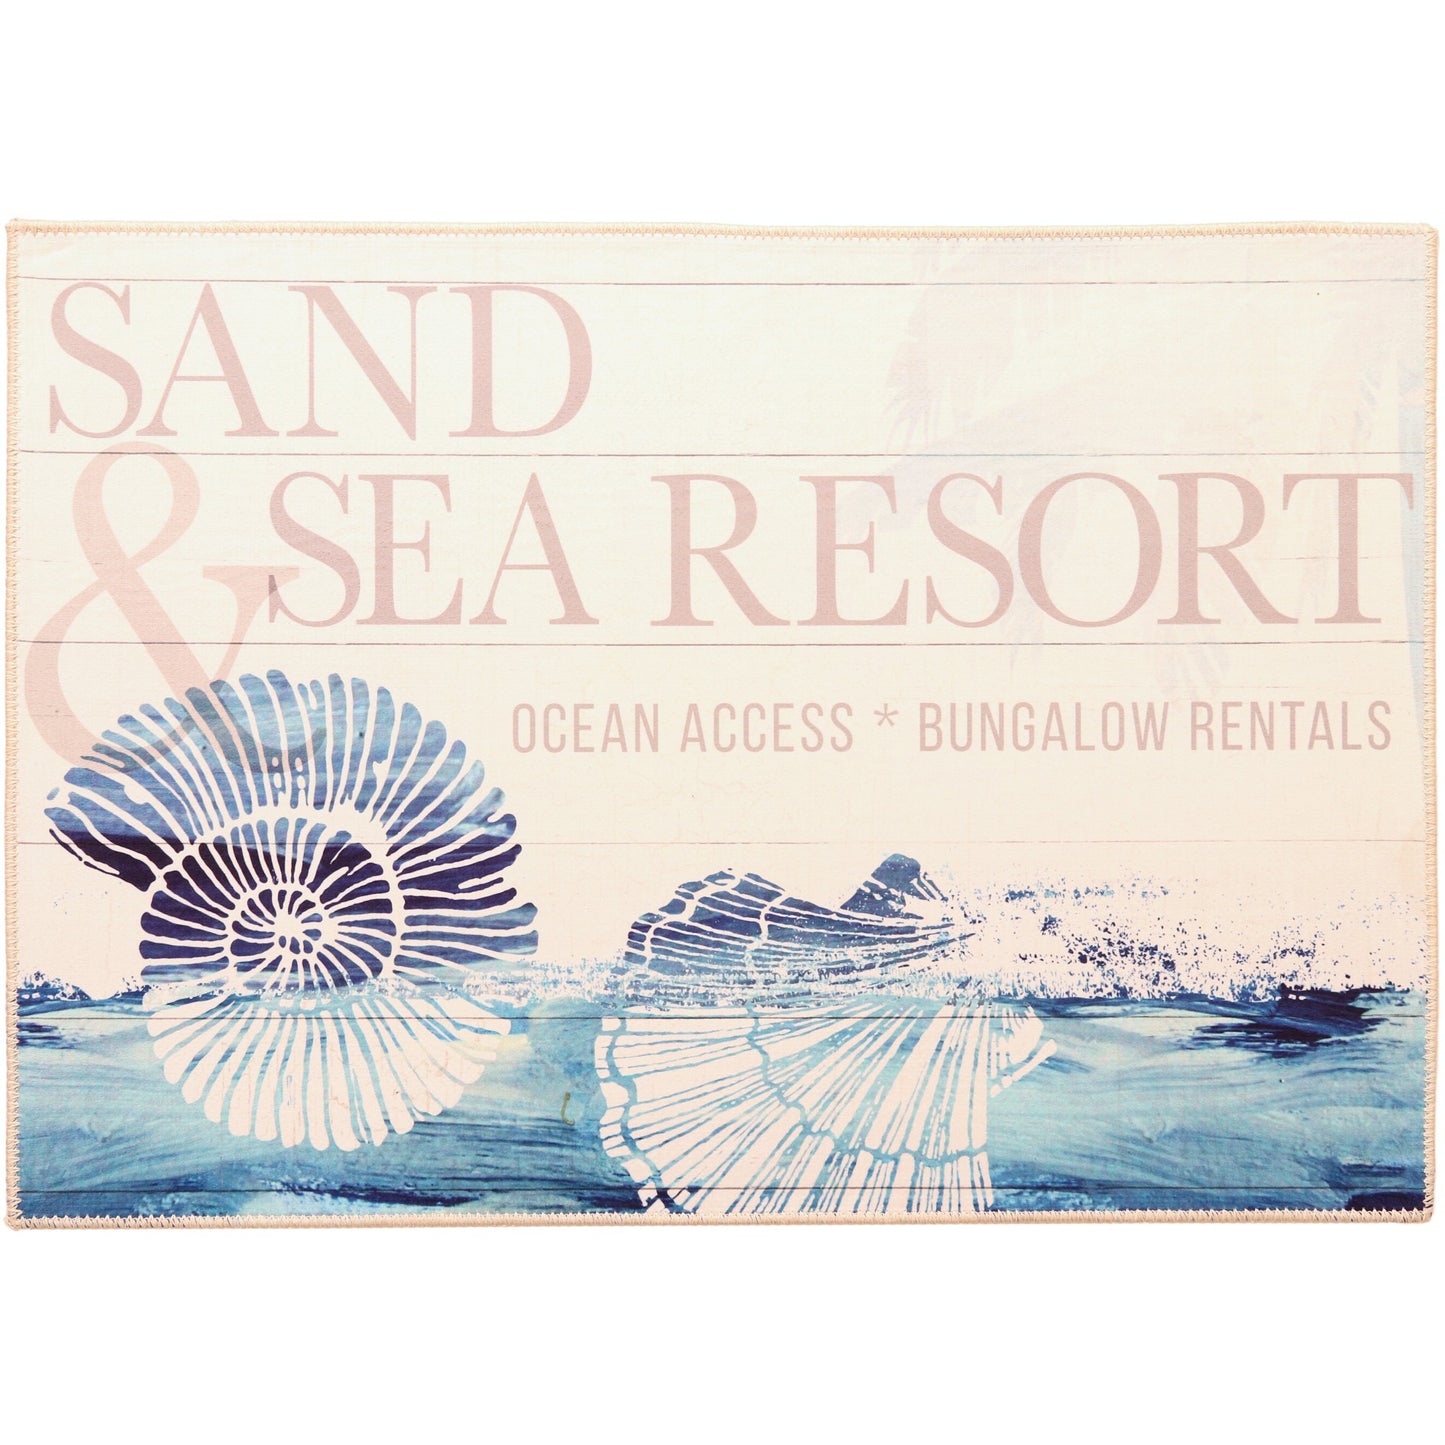 Sand & Sea Resort Olivia's Home Accent Washable Rug 22" x 32"